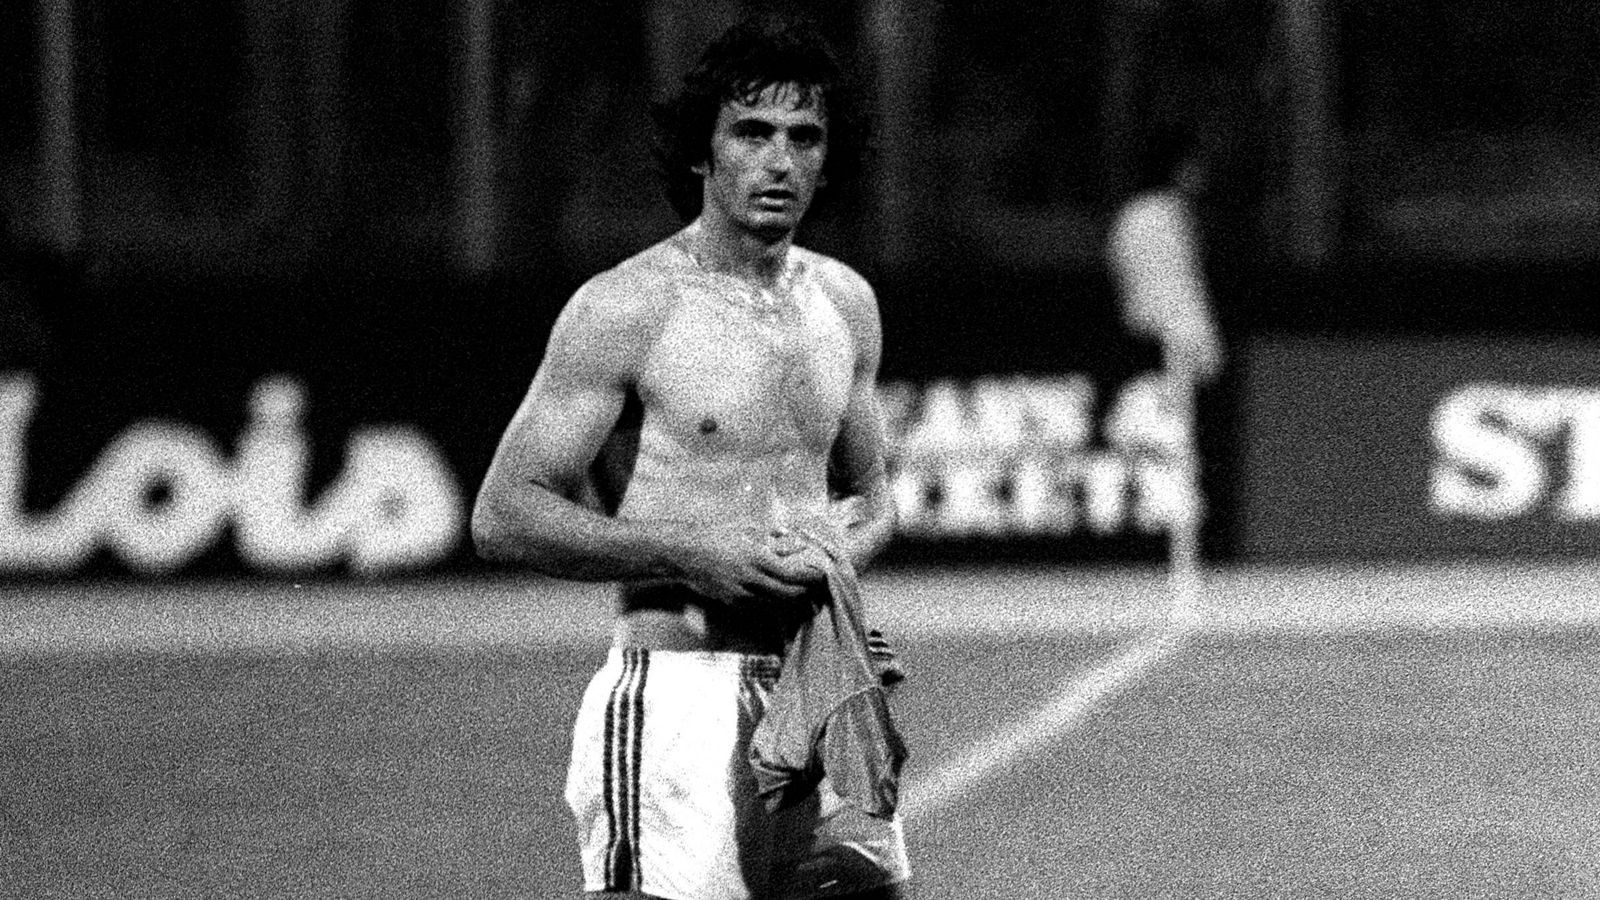 
                <strong>1978 - Vahid Halilhodzic (Jugoslawien)</strong><br>
                Dass der Jugoslawe Vahid Halilhodzic ein Topstürmer werden würde, war nicht klar, bevor es bei der U21-EM zum Finale gegen die DDR kam. Denn es war die erste große Sternstunde des späteren Torjägers von Nantes. Im Finale, das damals noch in Hin- und Rückspiel ausgetragen wurde, erzielte Halilhodzic insgesamt vier Treffer und war damit maßgeblich am Titelgewinn Jugoslawiens beteiligt. Heute ist der 68-Jährige Nationaltrainer Marokkos. 
              